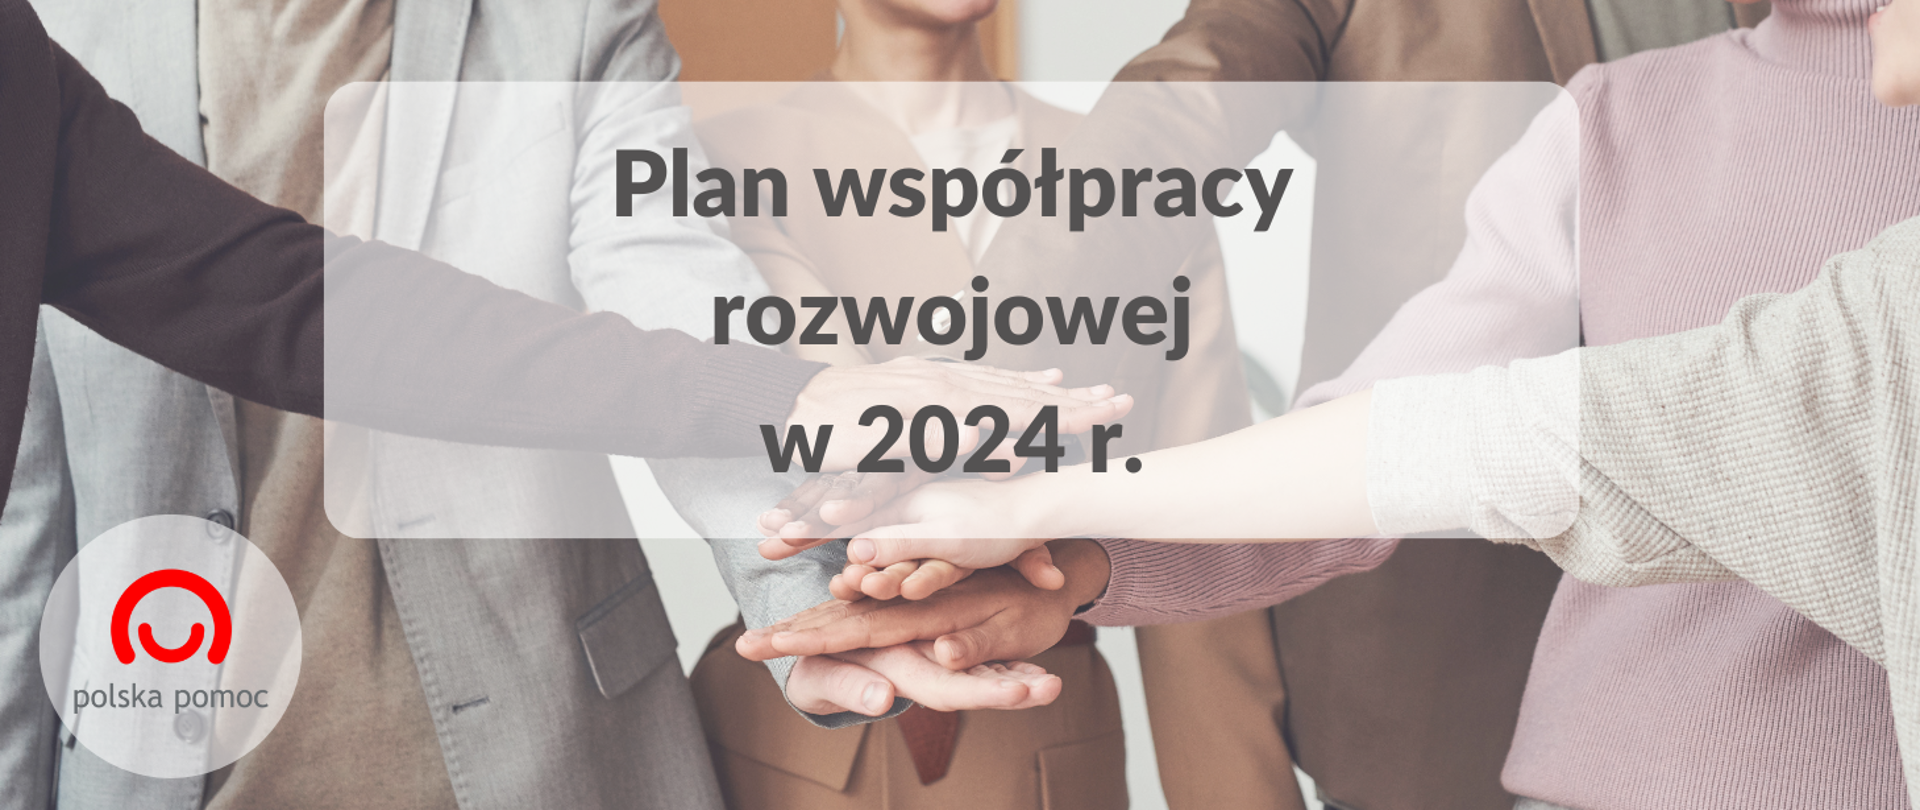 Plan współpracy rozwojowej w 2024 r.